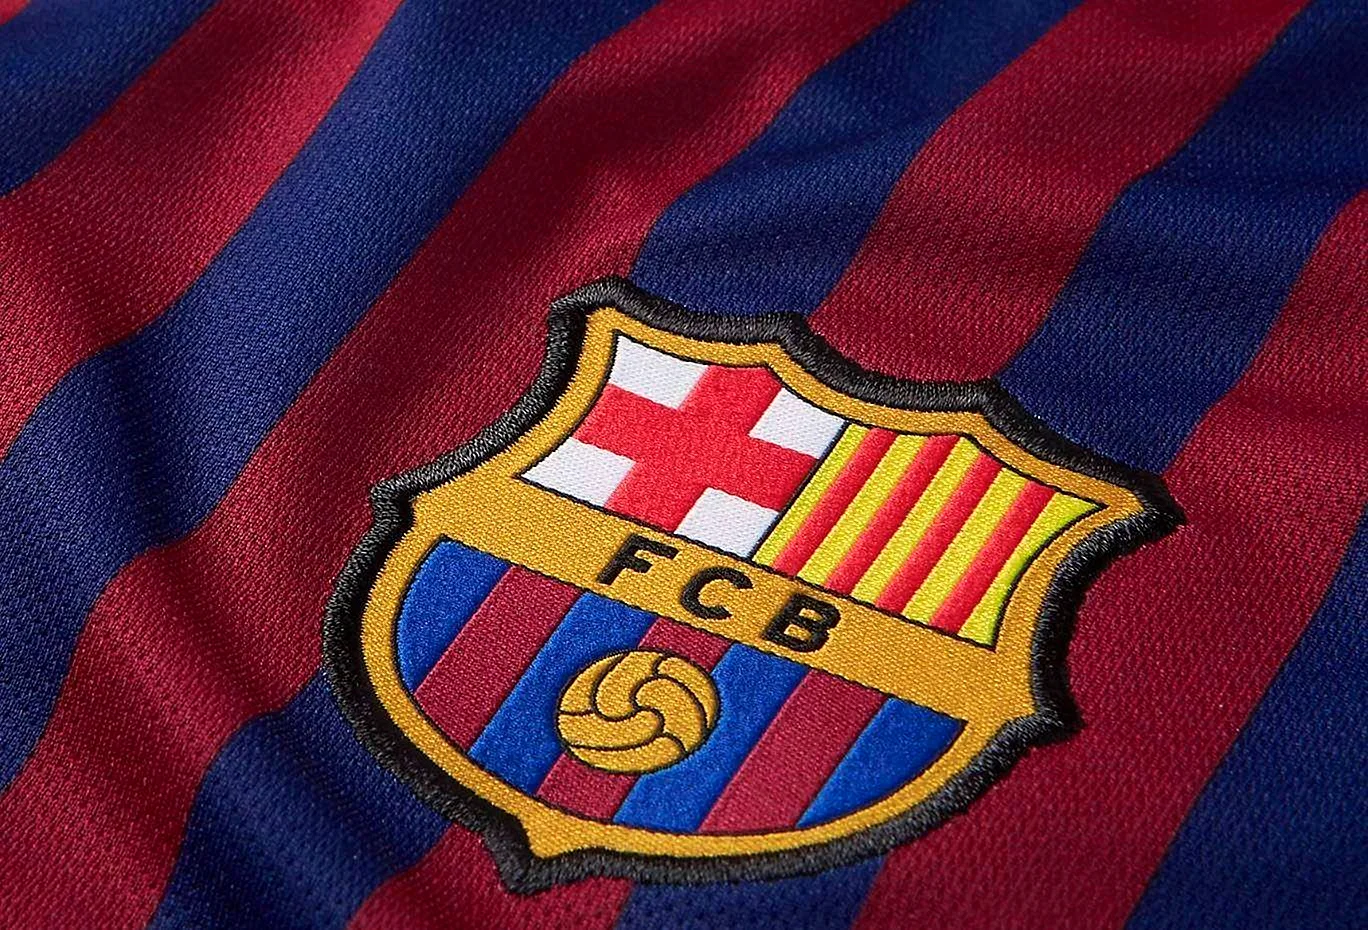 Барселона футбольный клуб